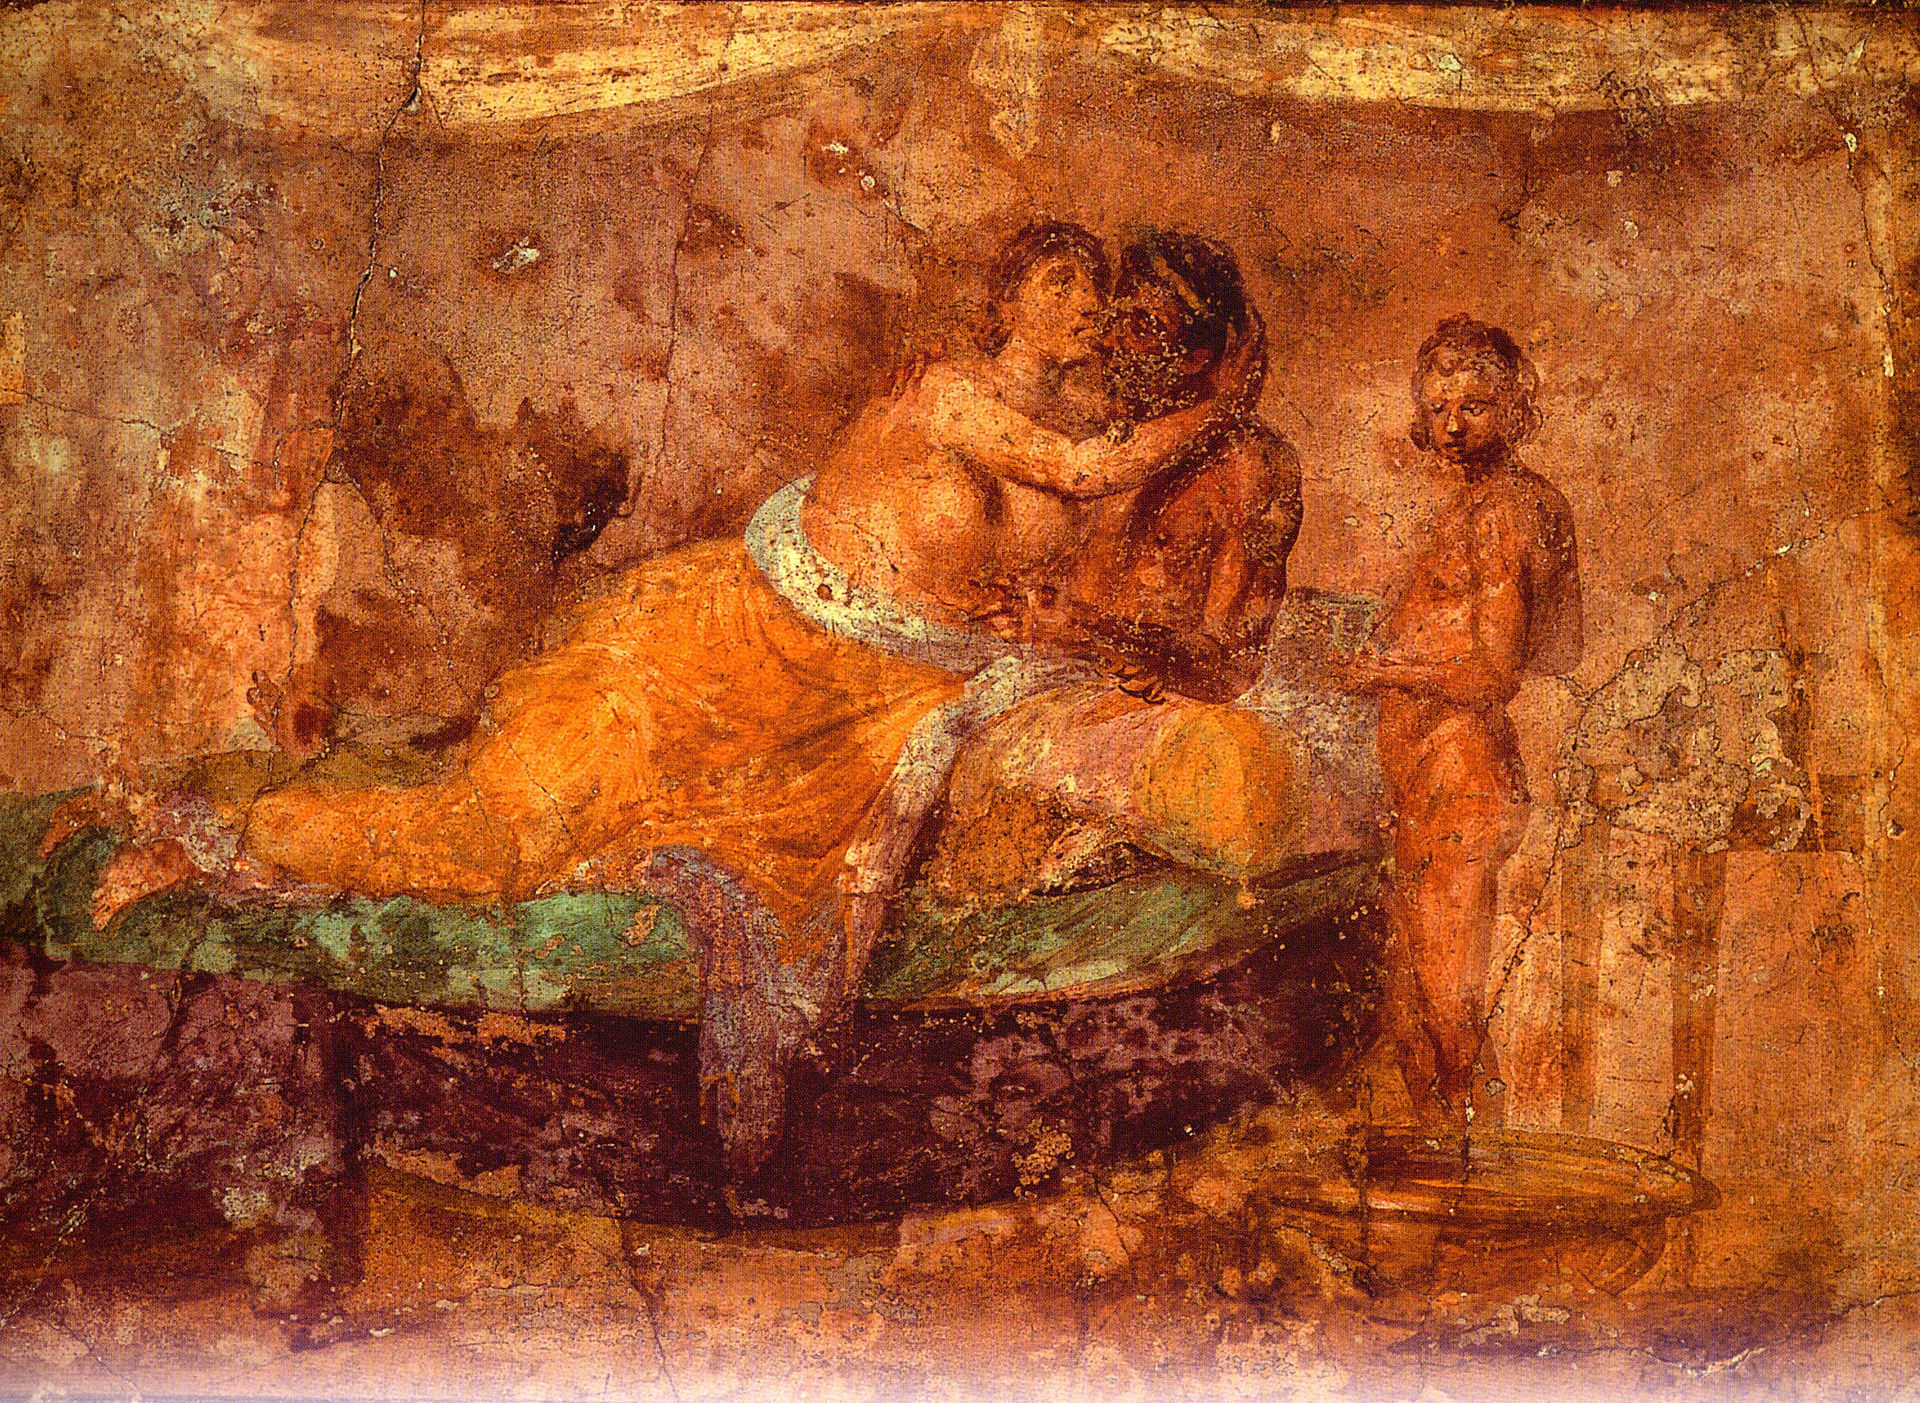 Сексуальная жизнь в Древнем Риме | Пикабу